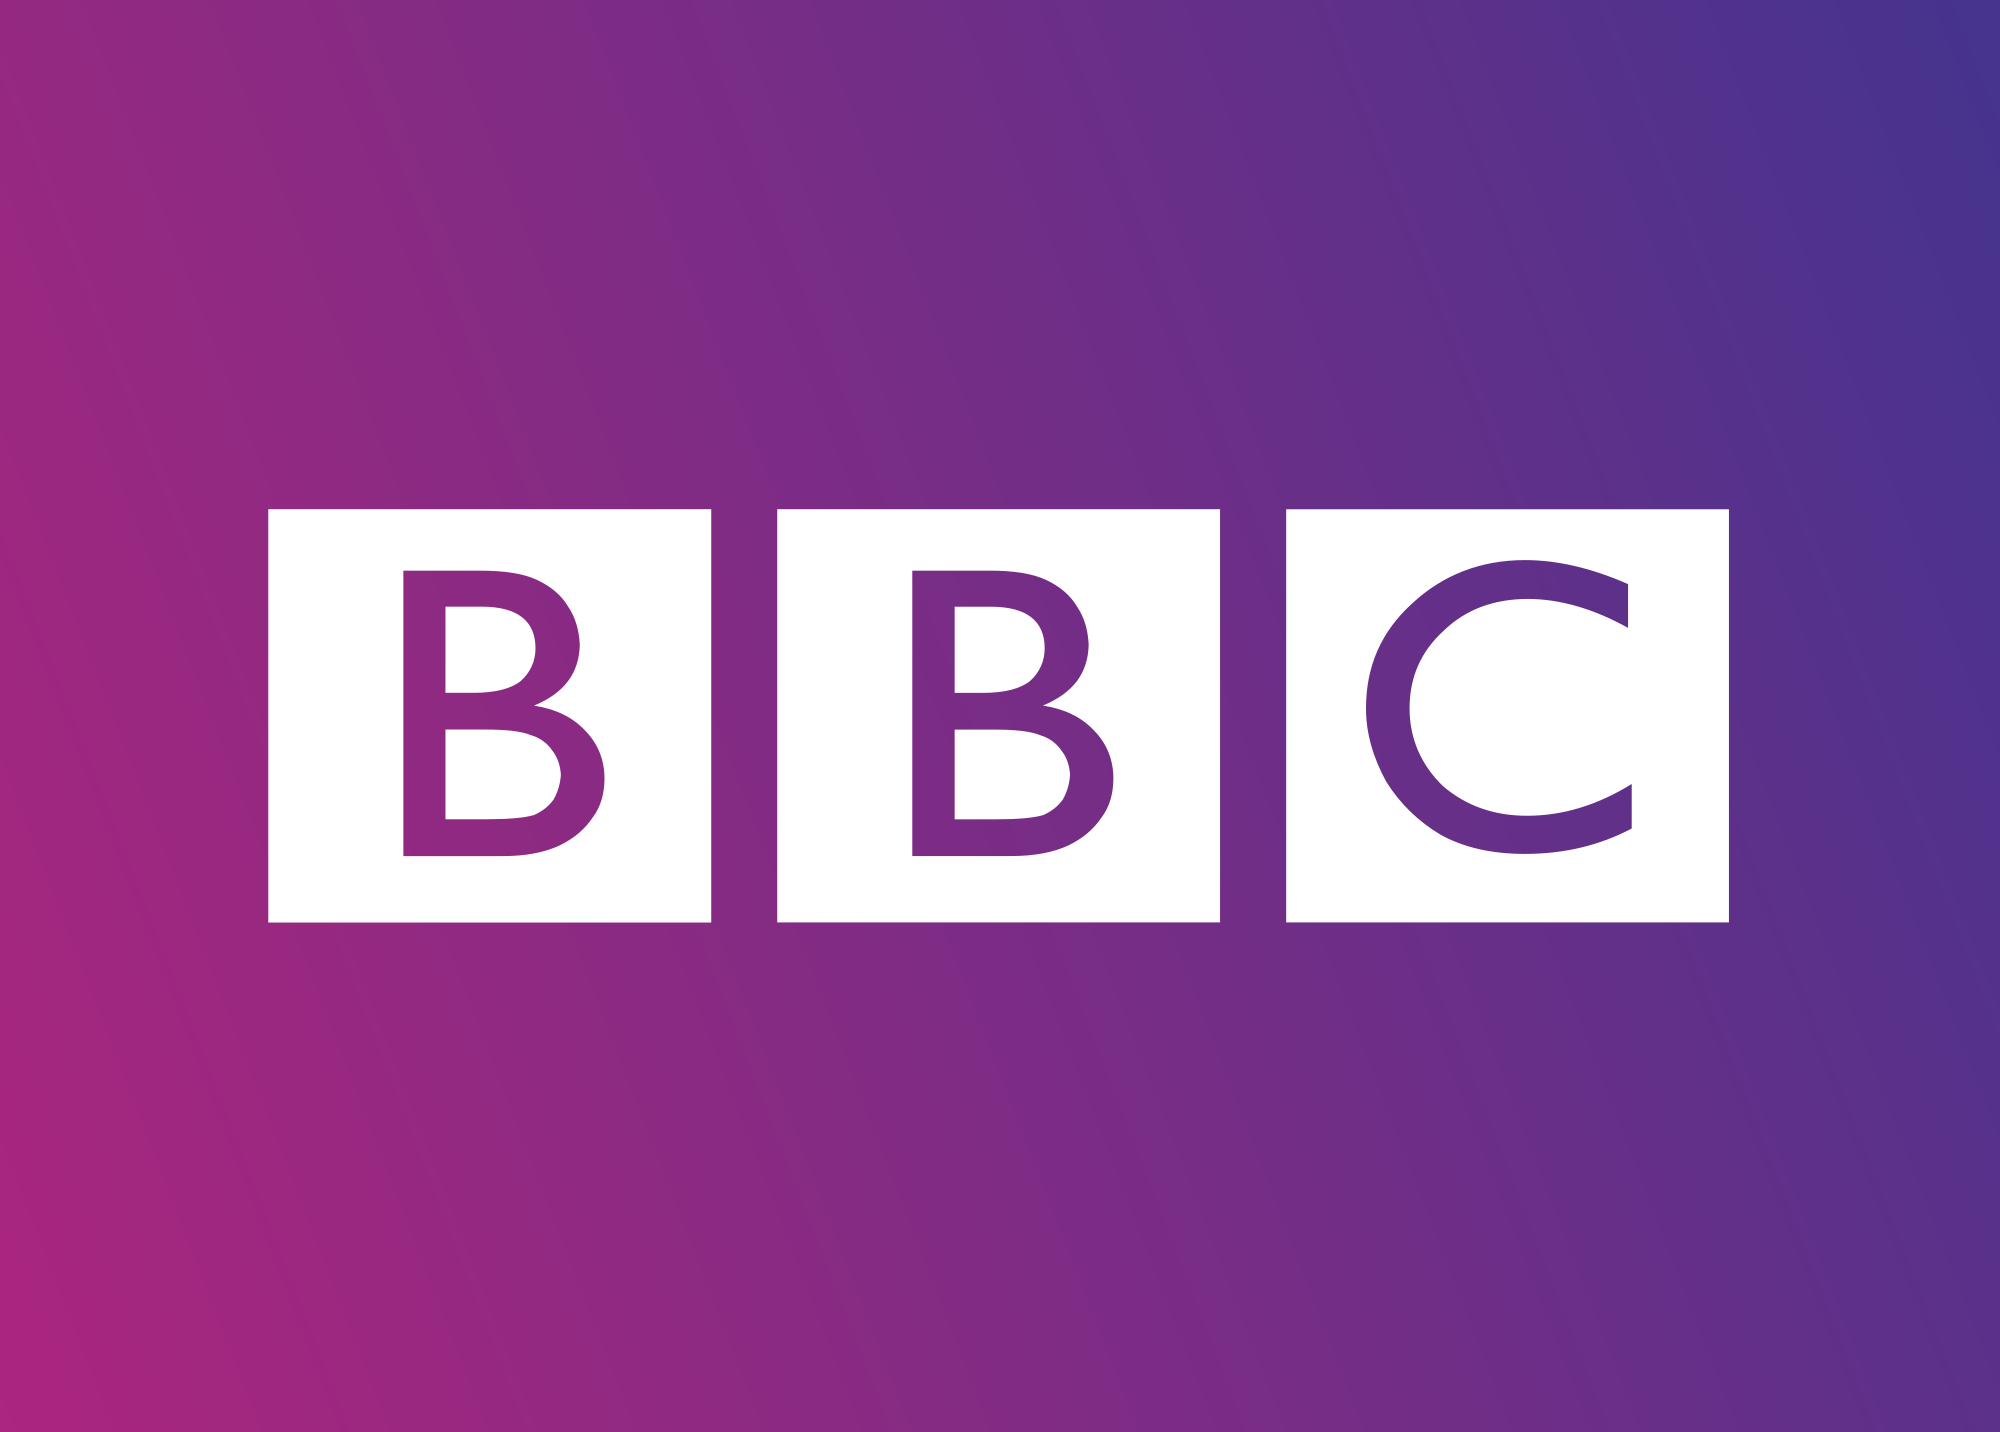 BBCイギリス国営放送ロゴ